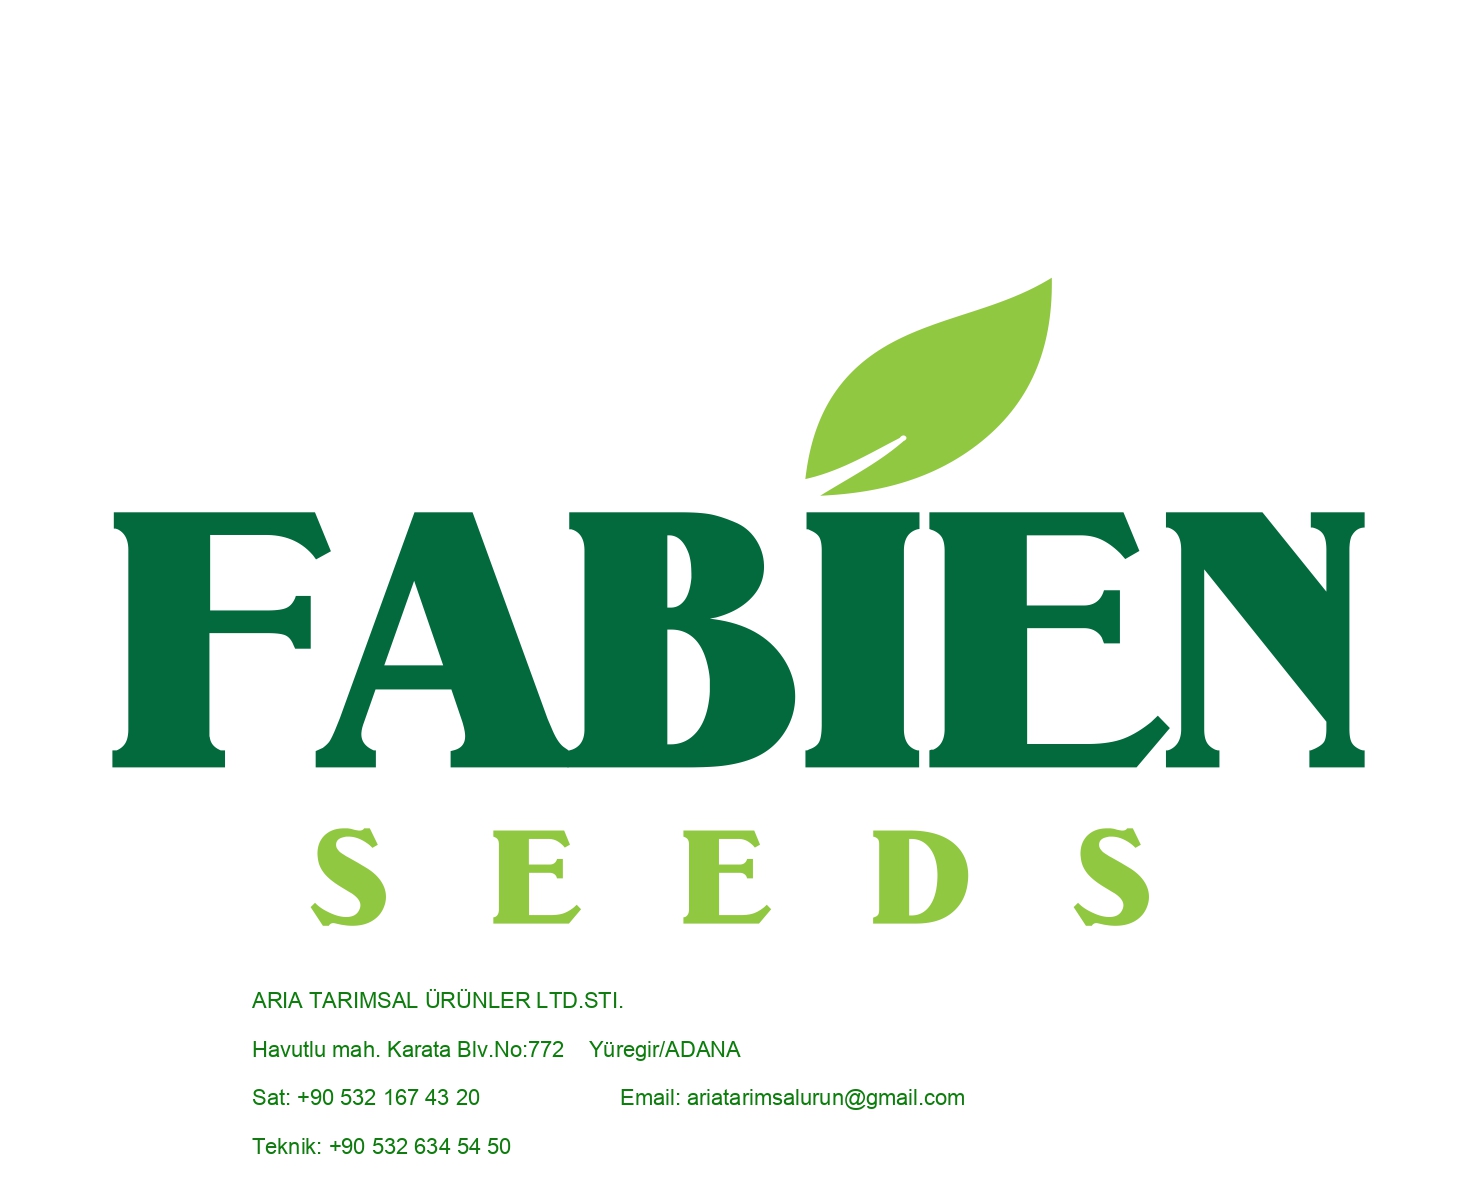 Fabien Seeds